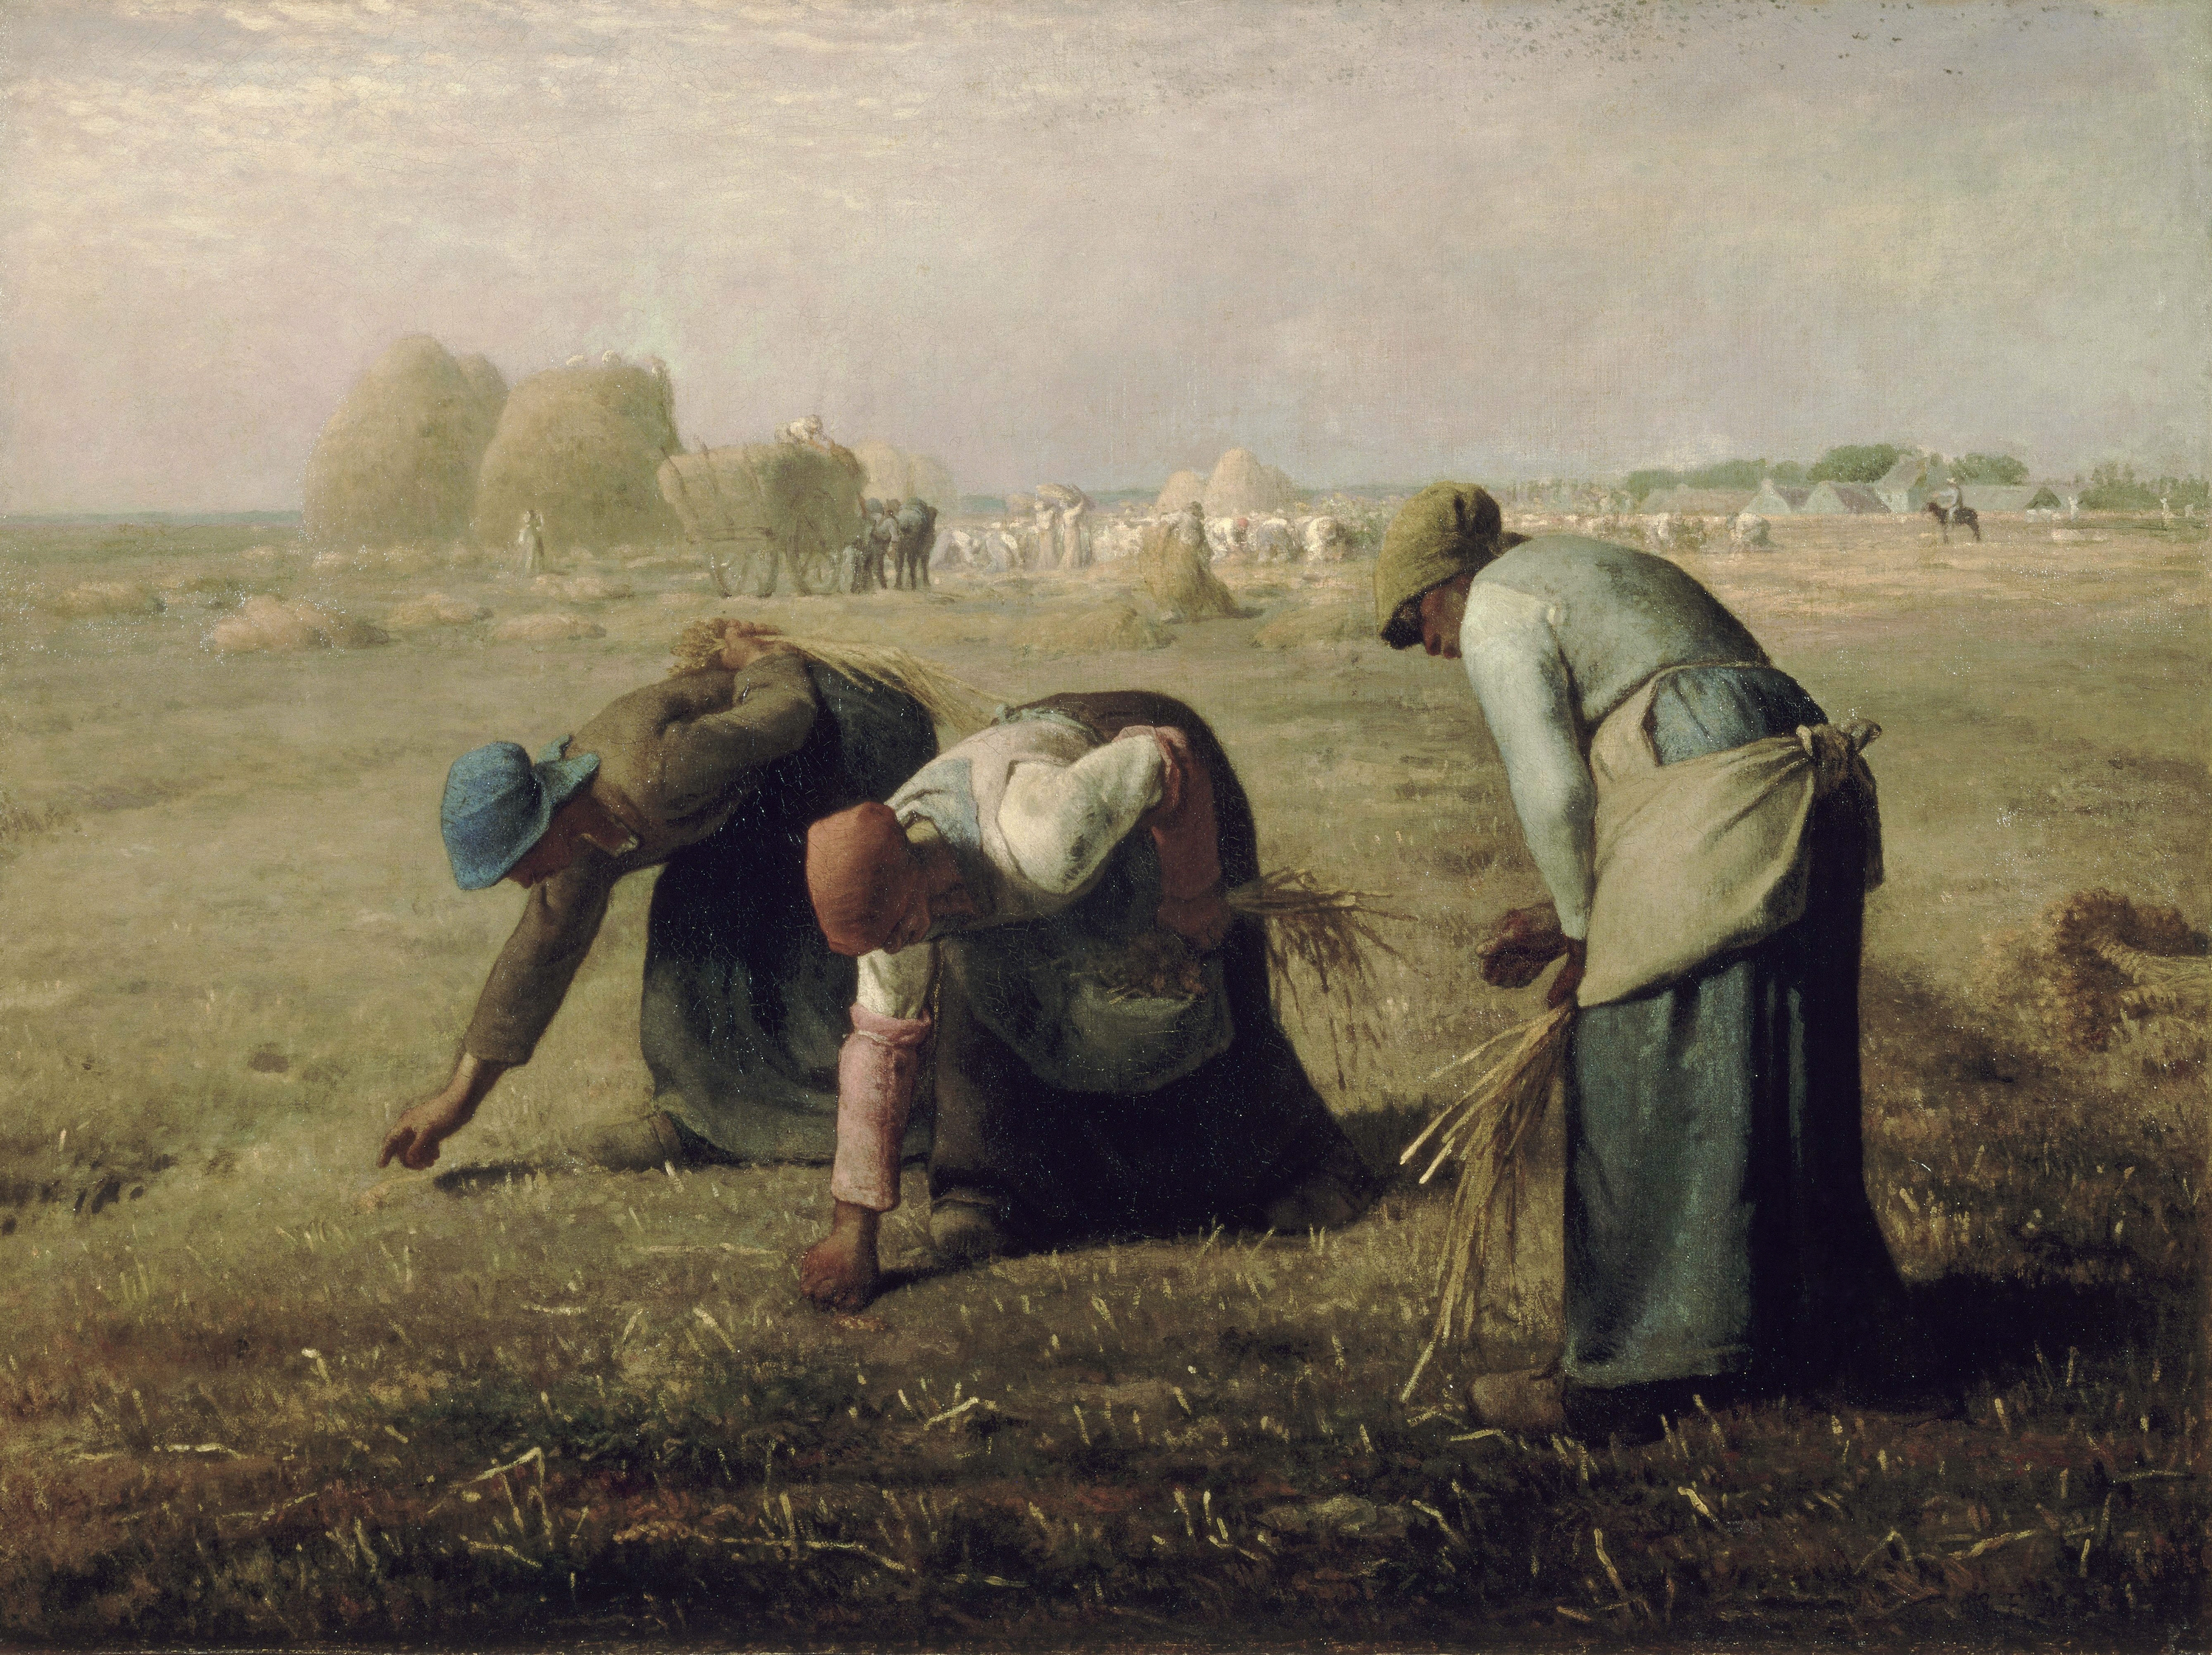 이삭 줍는 여인들 by Jean-François Millet - 1857 - 83.8 × 111.8 cm 